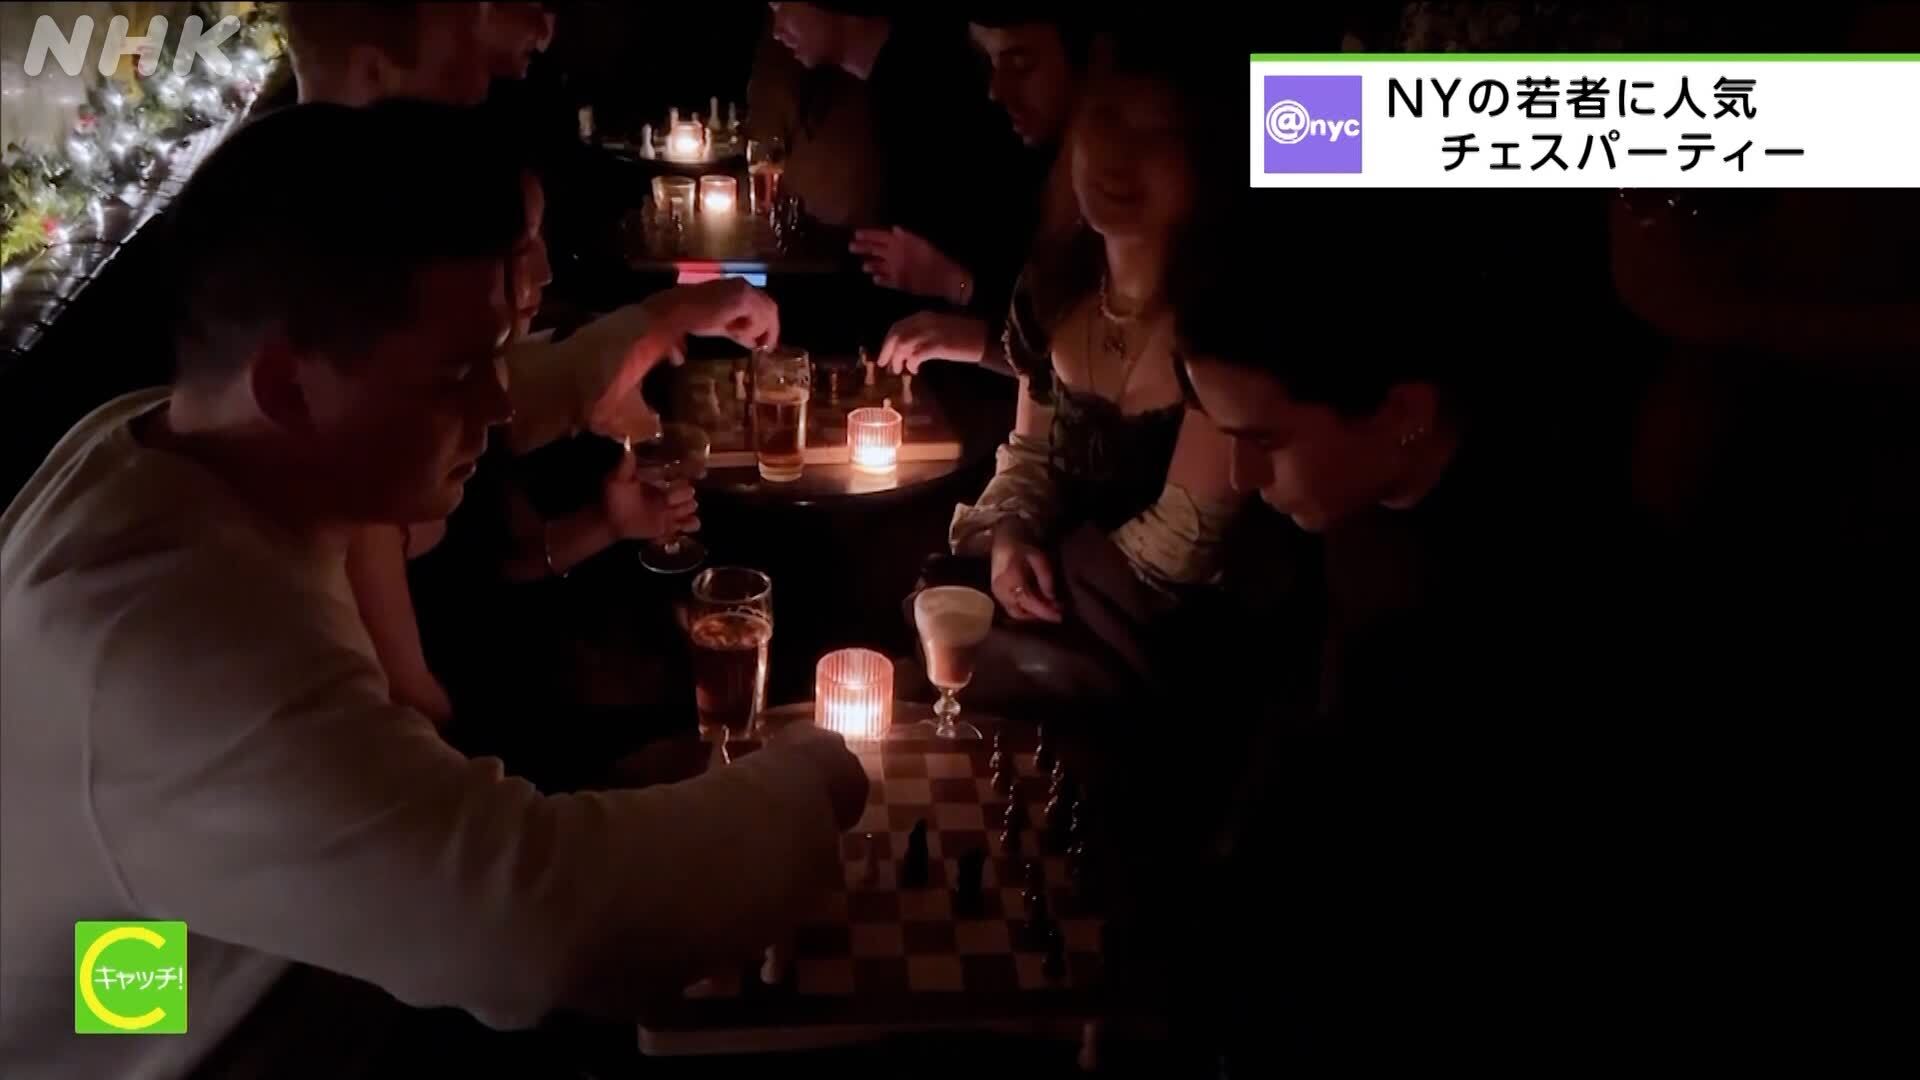 纽约年轻人喜爱的国际象棋派对 - Catch! 来自世界各地的头条新闻 - NHK